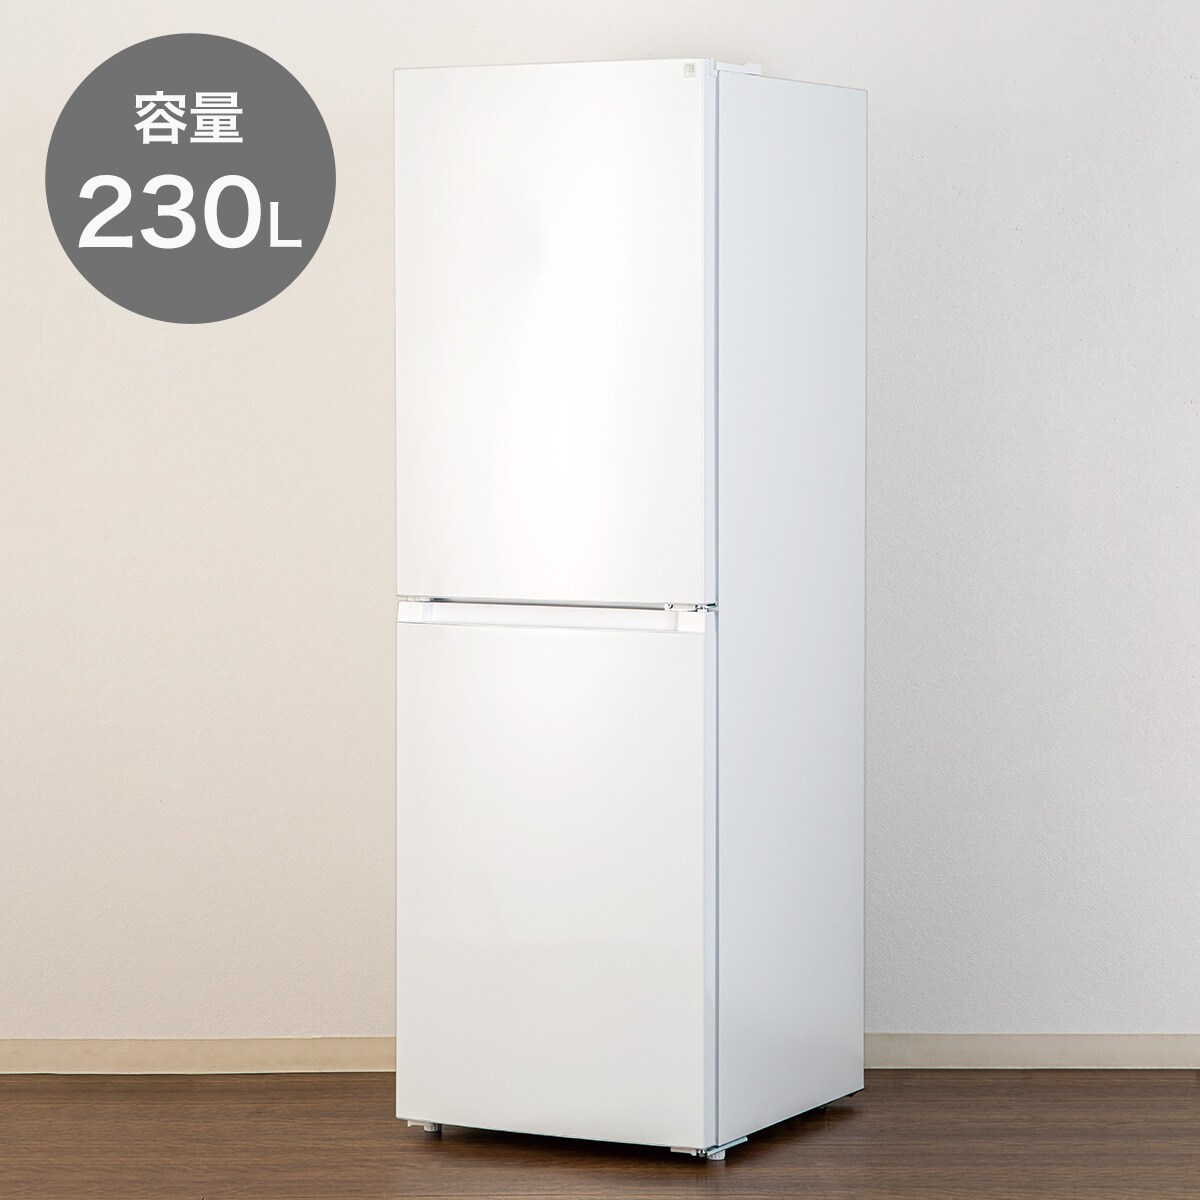 230L 2ドアファン式冷凍冷蔵庫(NR-230F ホワイト)